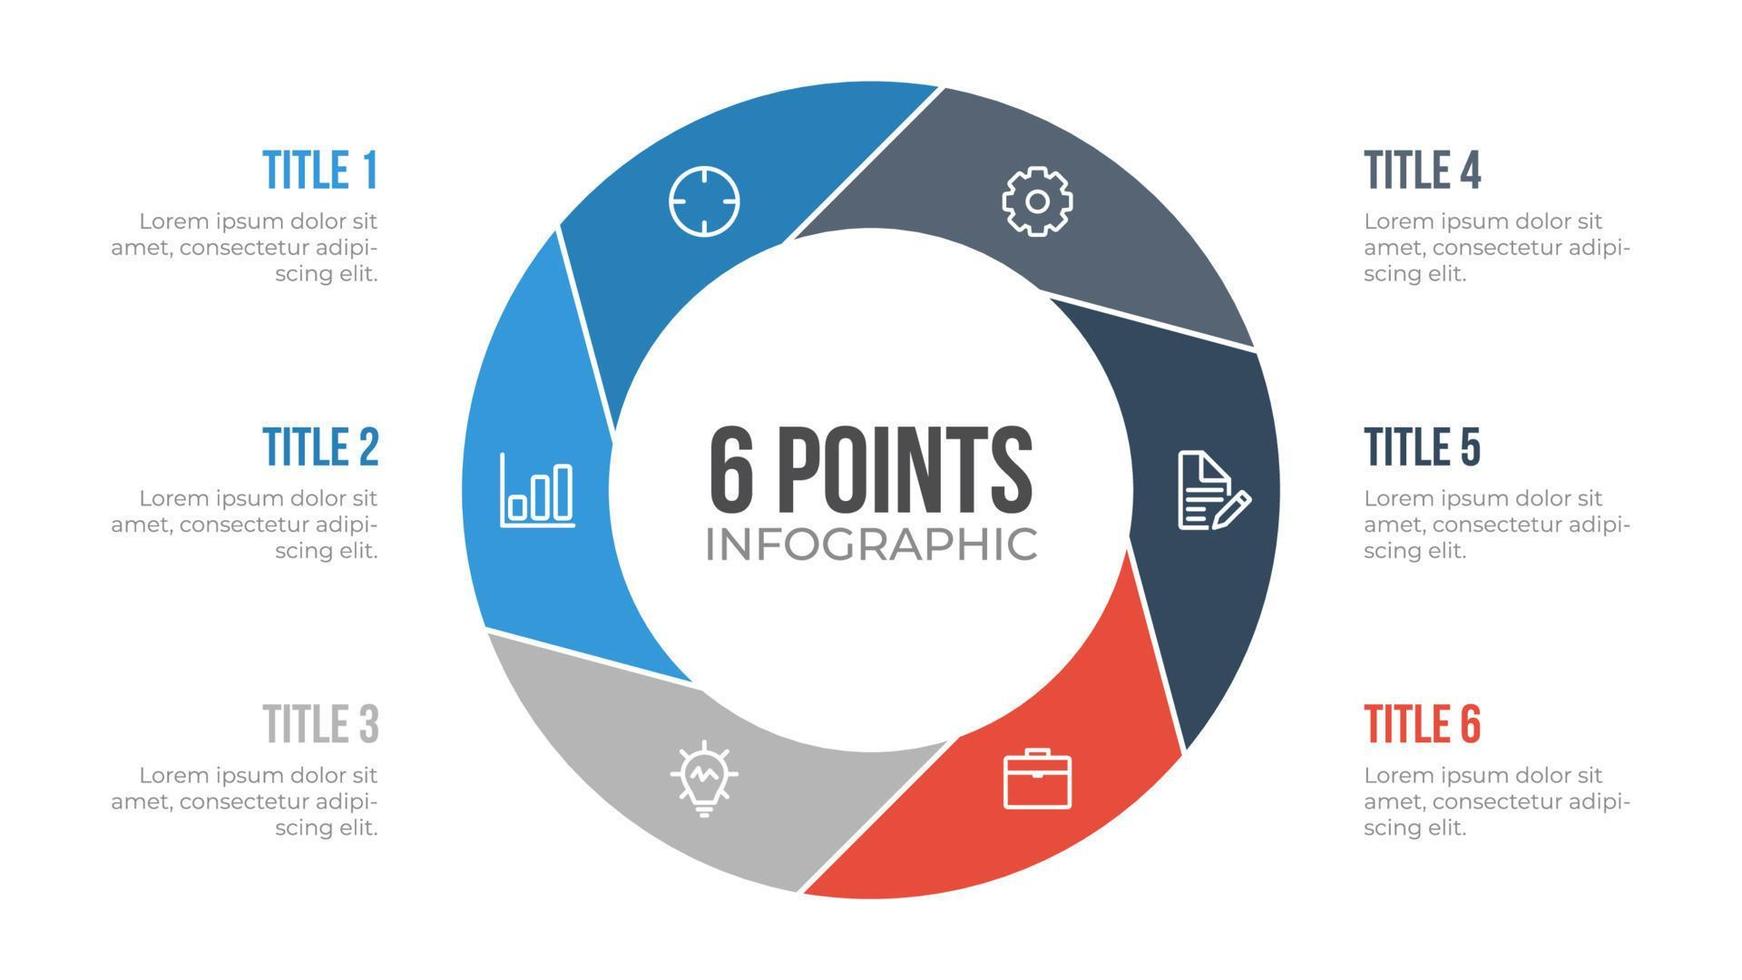 Vetor de elemento infográfico de círculo de 6 pontos, pode ser usado para fluxo de trabalho, etapas, opções, lista, processos, slide de apresentação, relatório, etc.